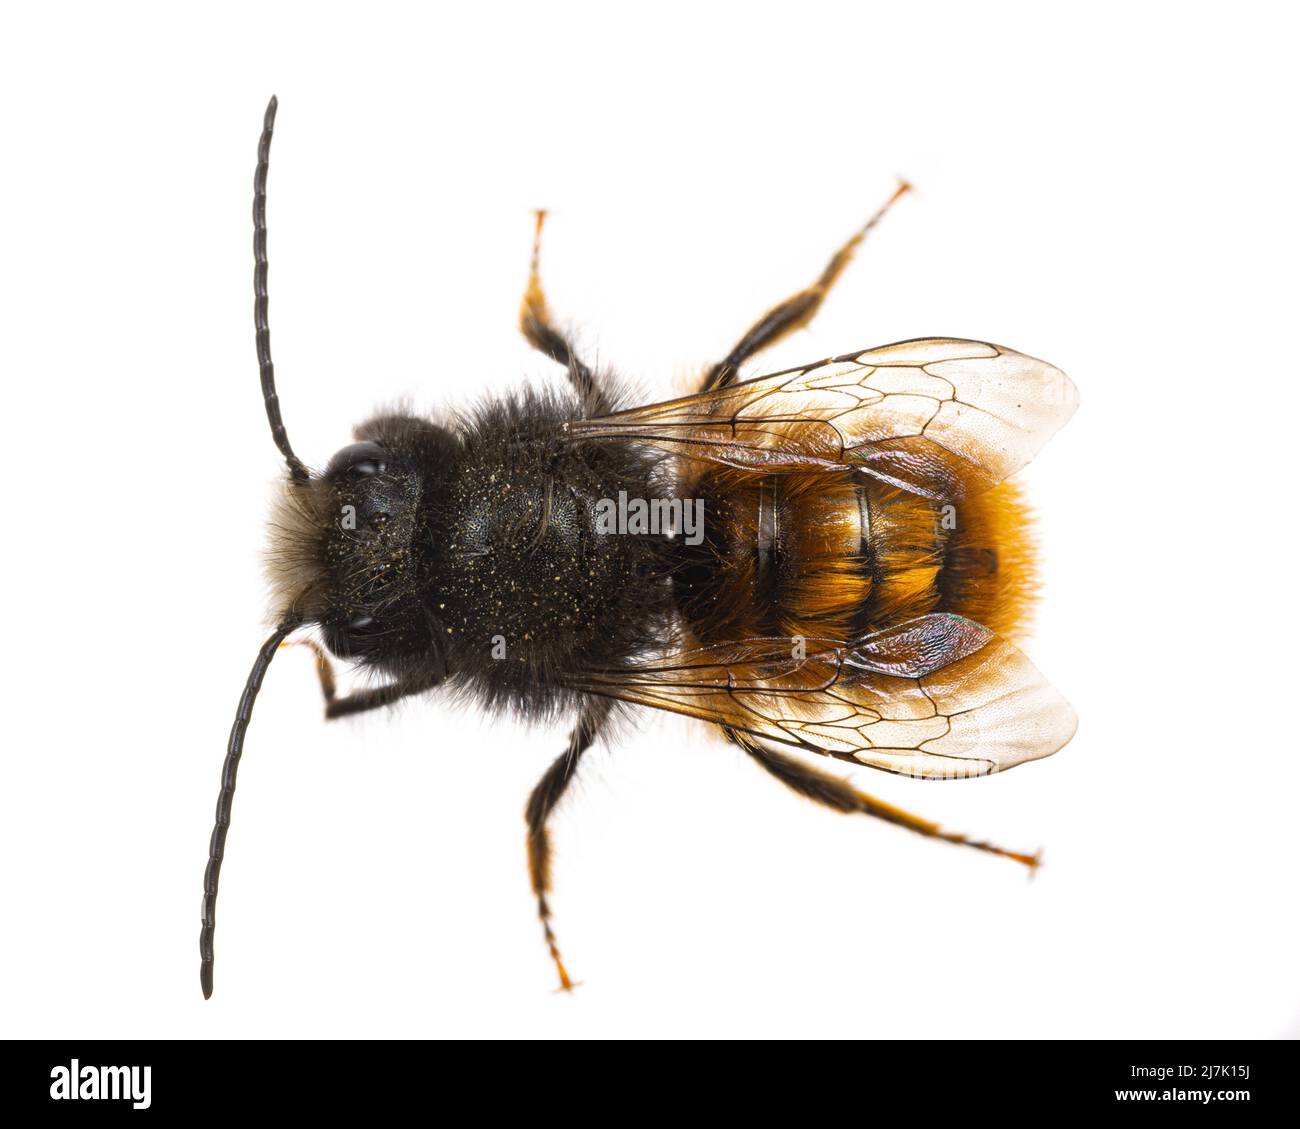 Insects of europe - Bienen: Makro der männlichen Osmia cornuta Europäische Obstbiene (deutsche Gehoerte Mauerbiene) isoliert auf weißem Hintergrund Stockfoto